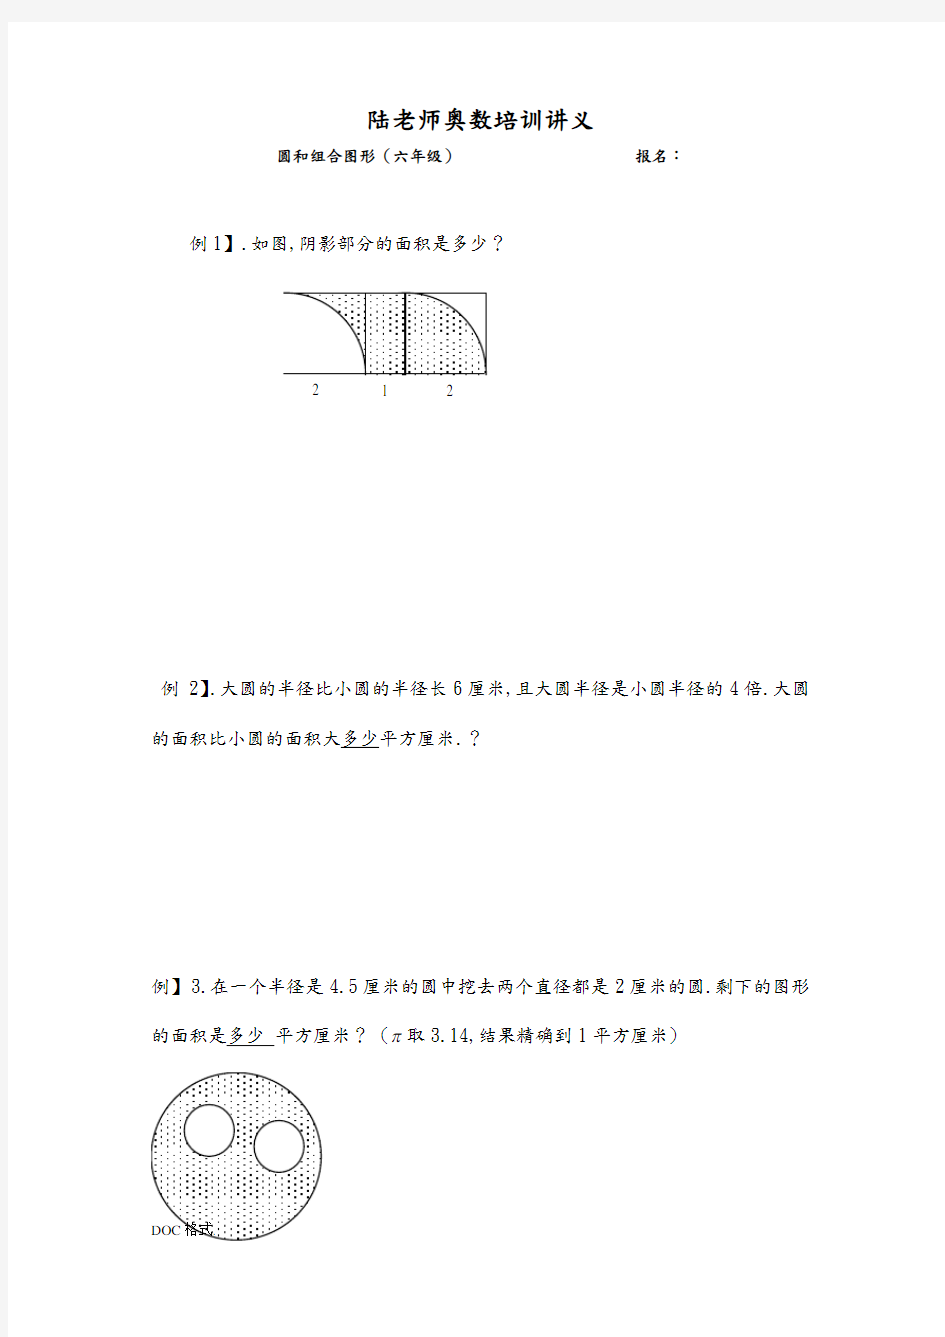 六年级奥数题_圆和组合图形(B)